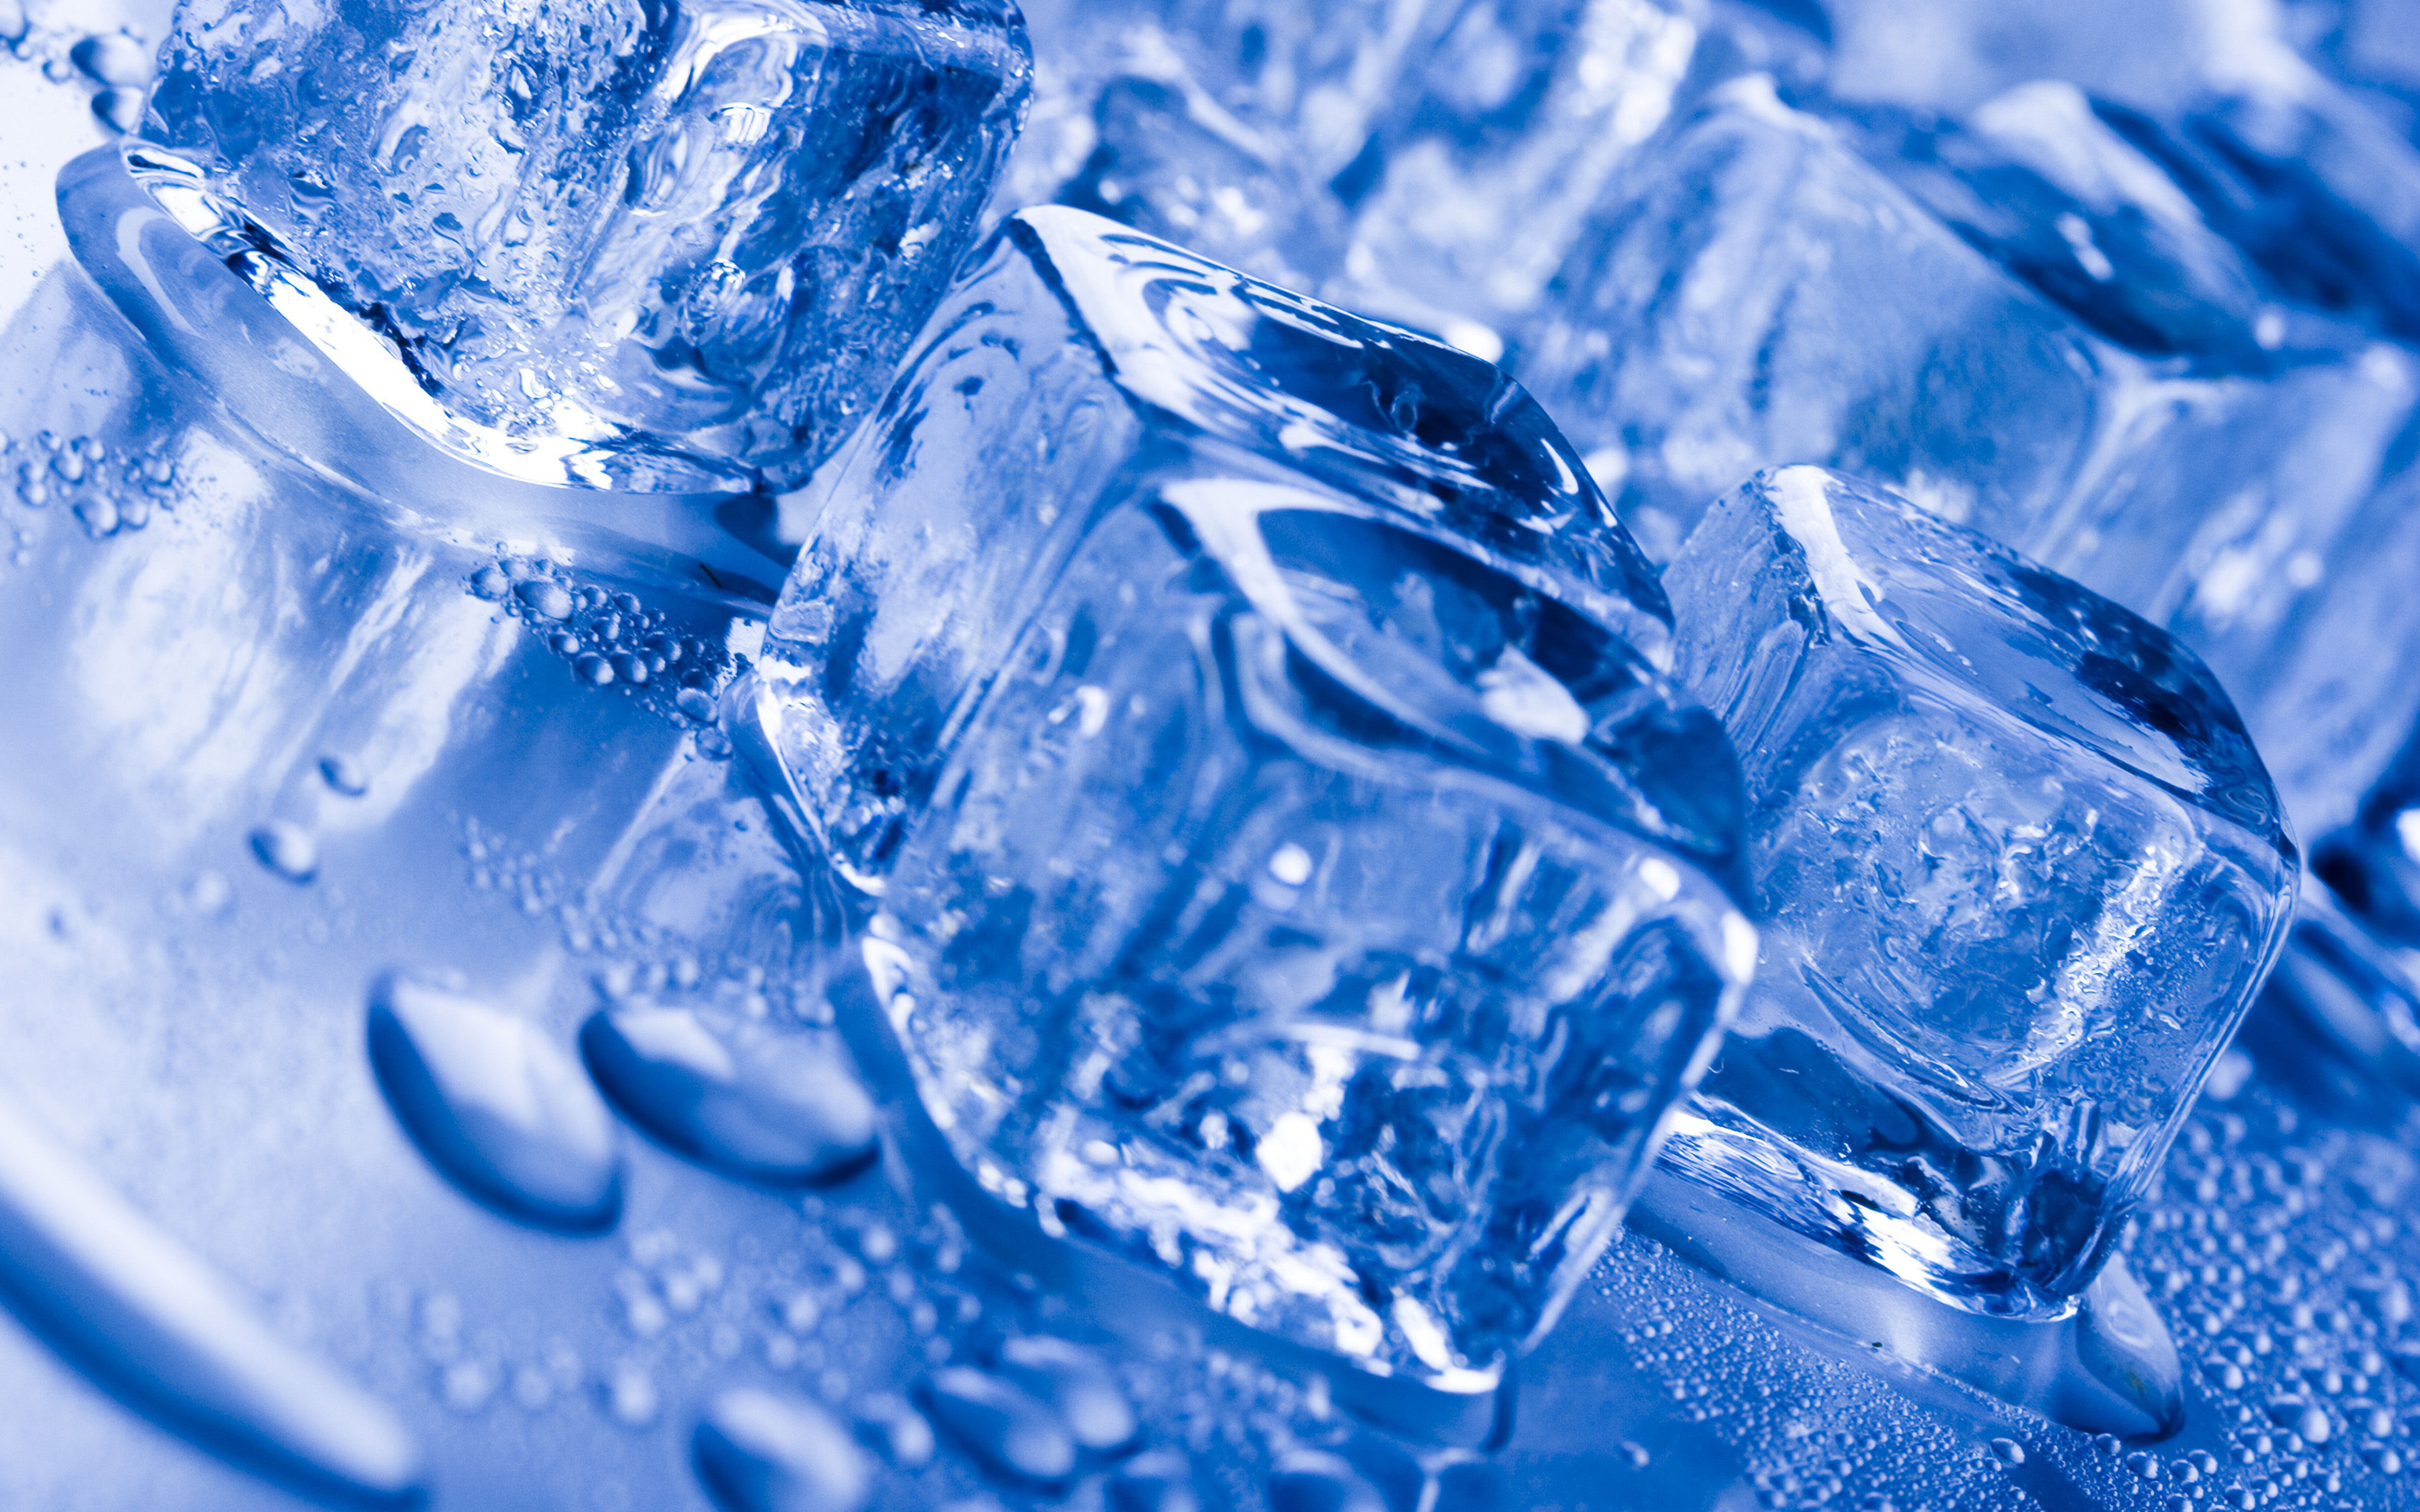 Обои лед 3. Кубики льда. Синий лед. Лед. Вода со льдом.